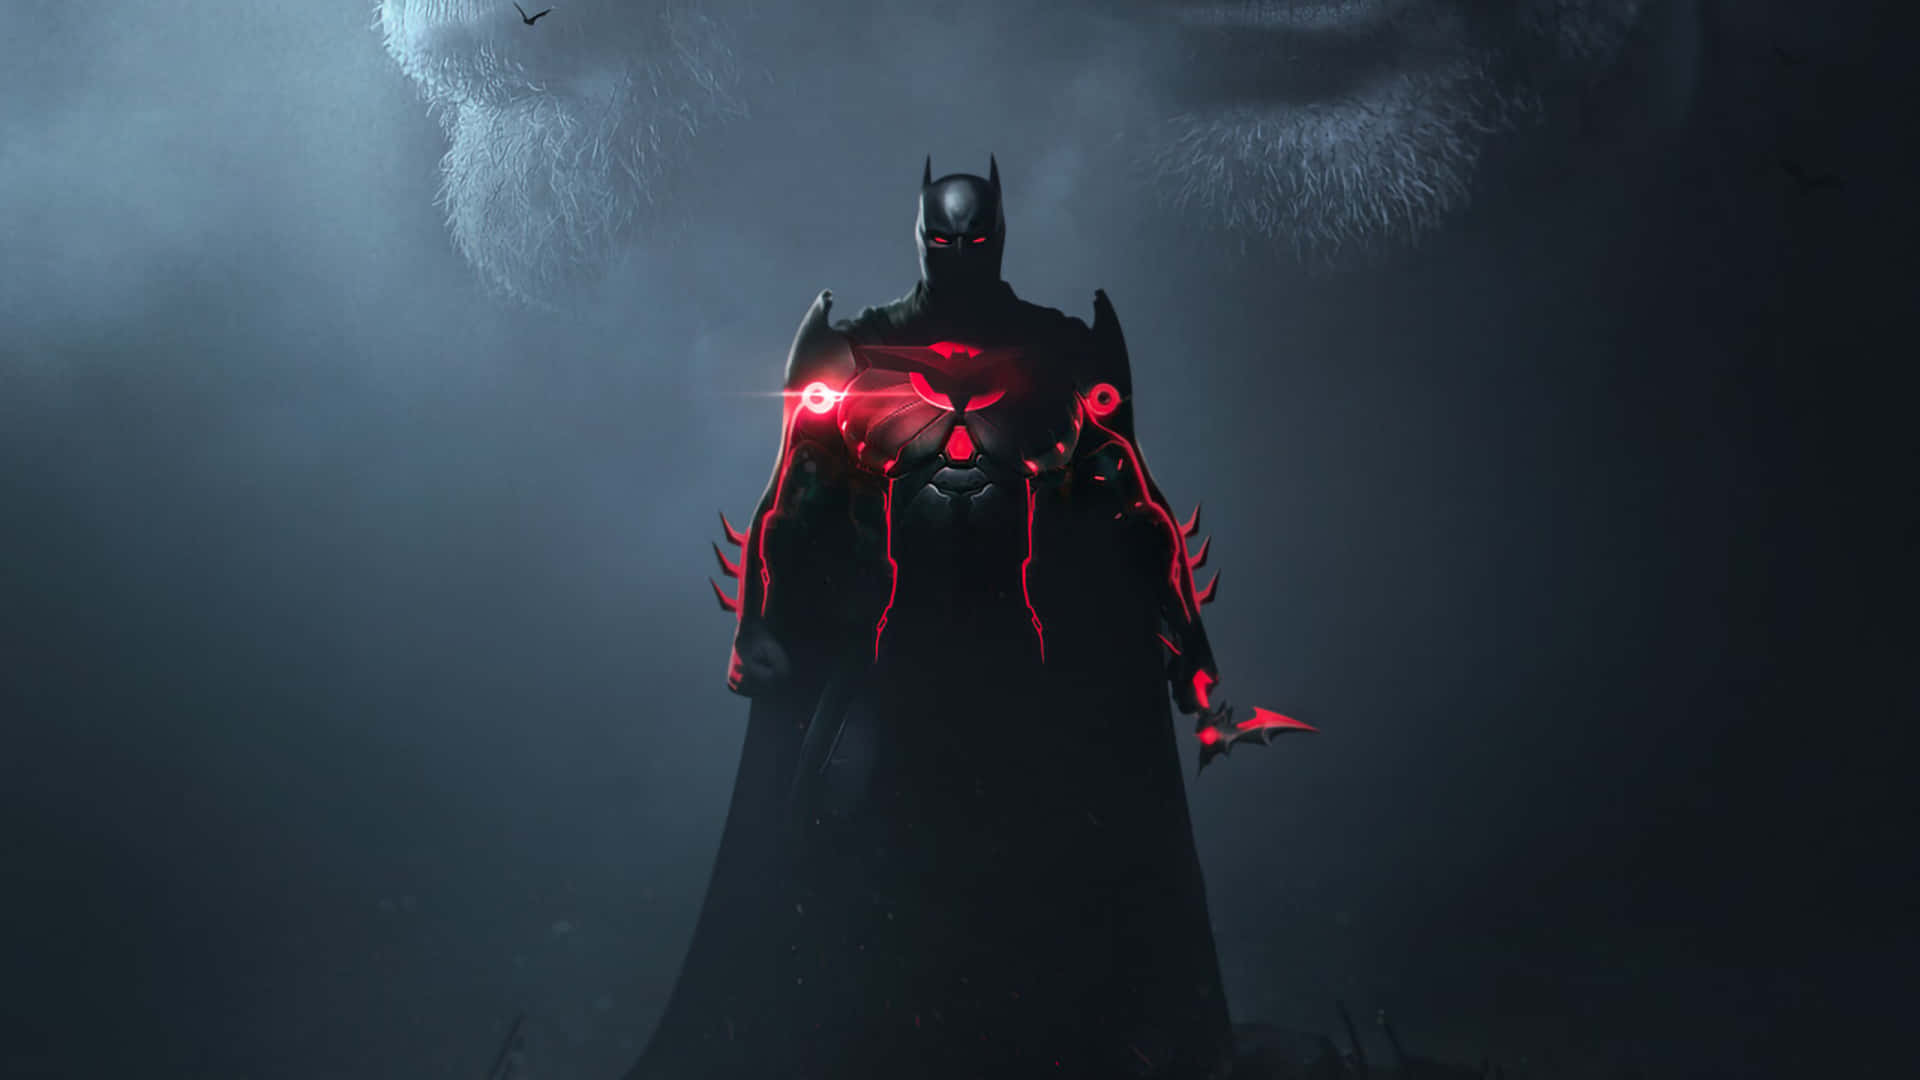 Ilcavaliere Oscuro - Batman In Azione Sfondo